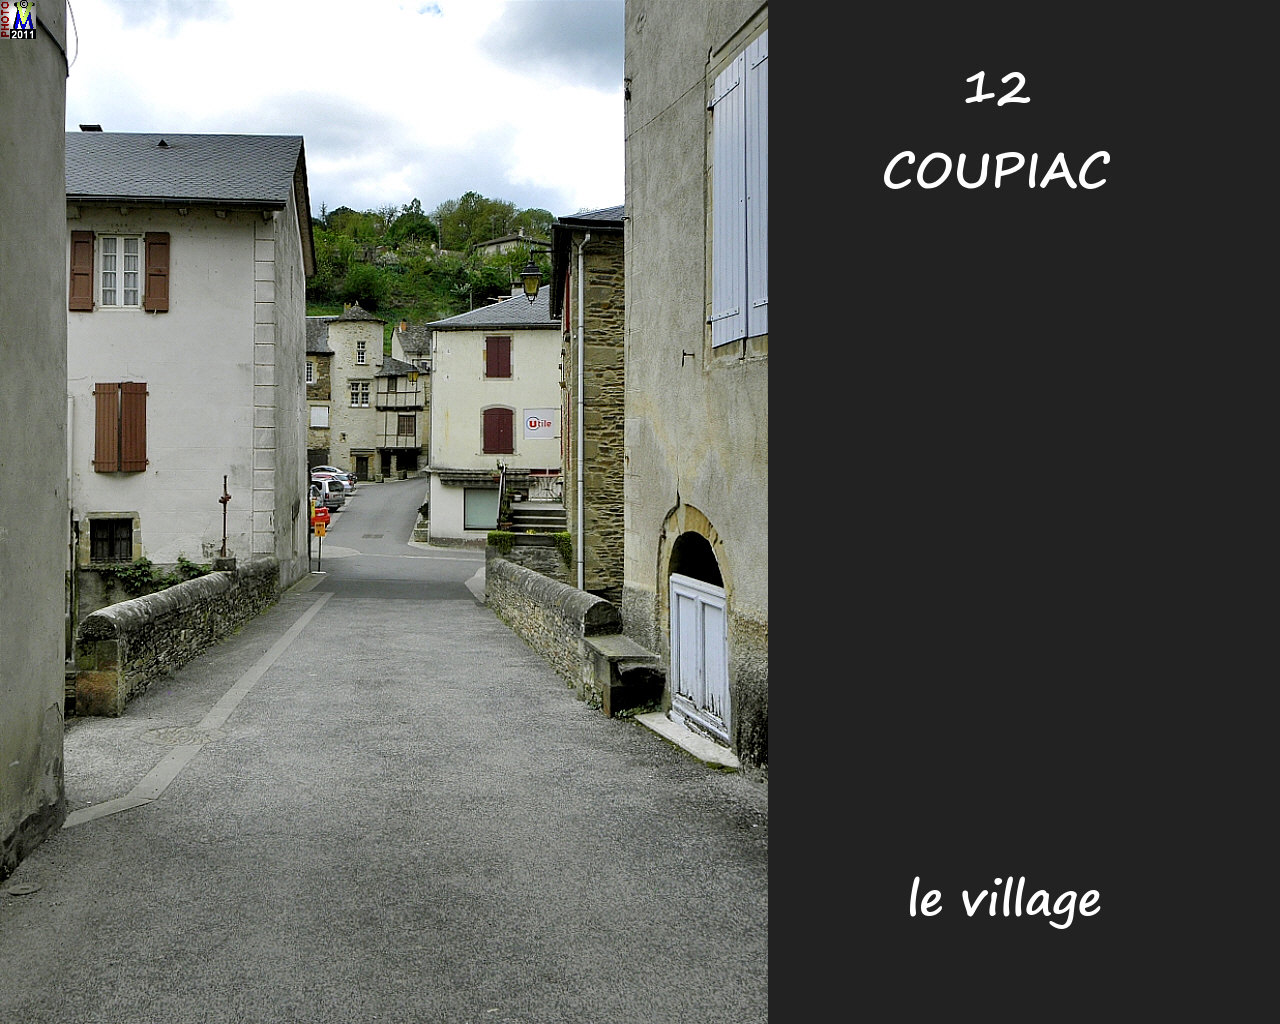 12COUPIAC_village_102.jpg